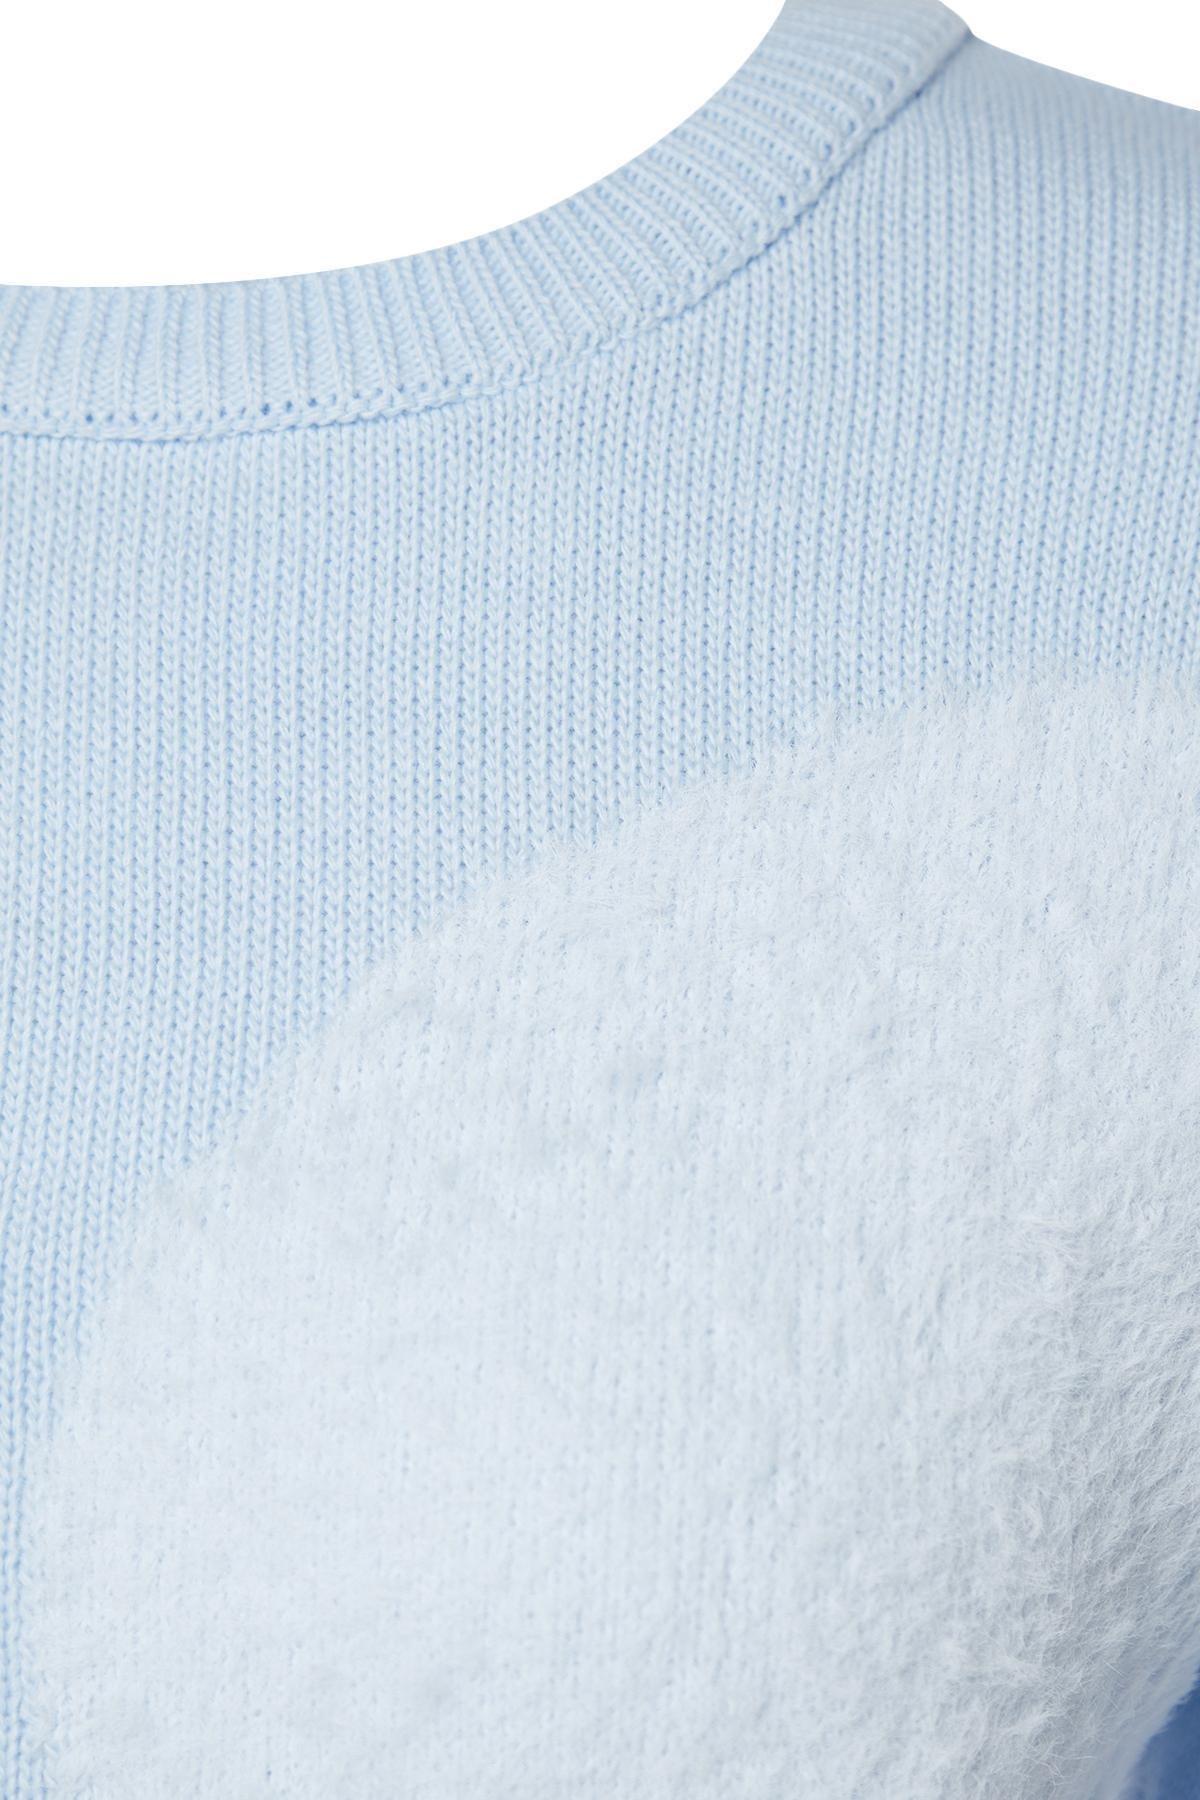 Trendyol - Blue Feather Knitwear Sweater